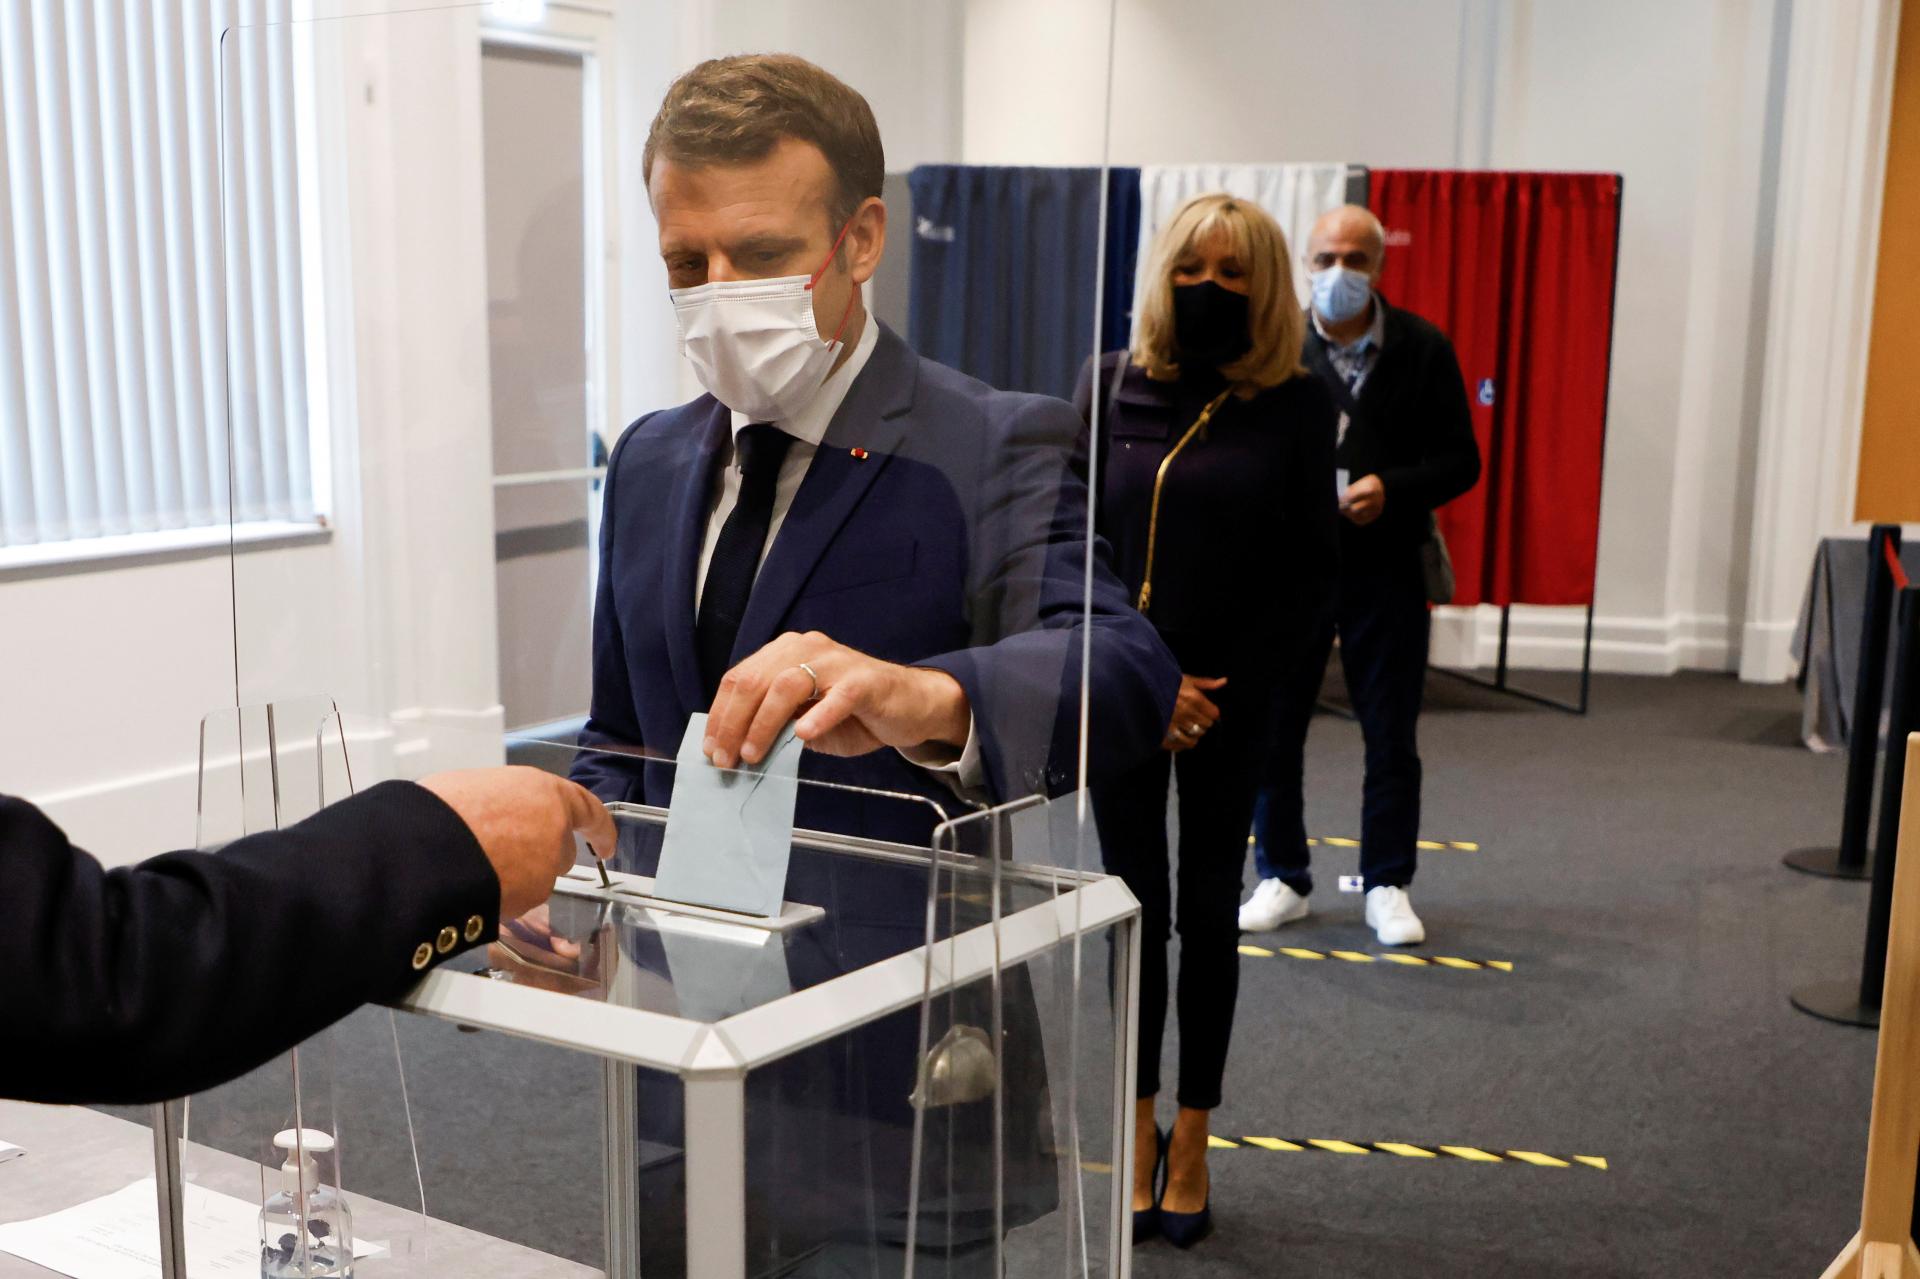 Lezajlott a helyi választások második fordulója Franciaországban